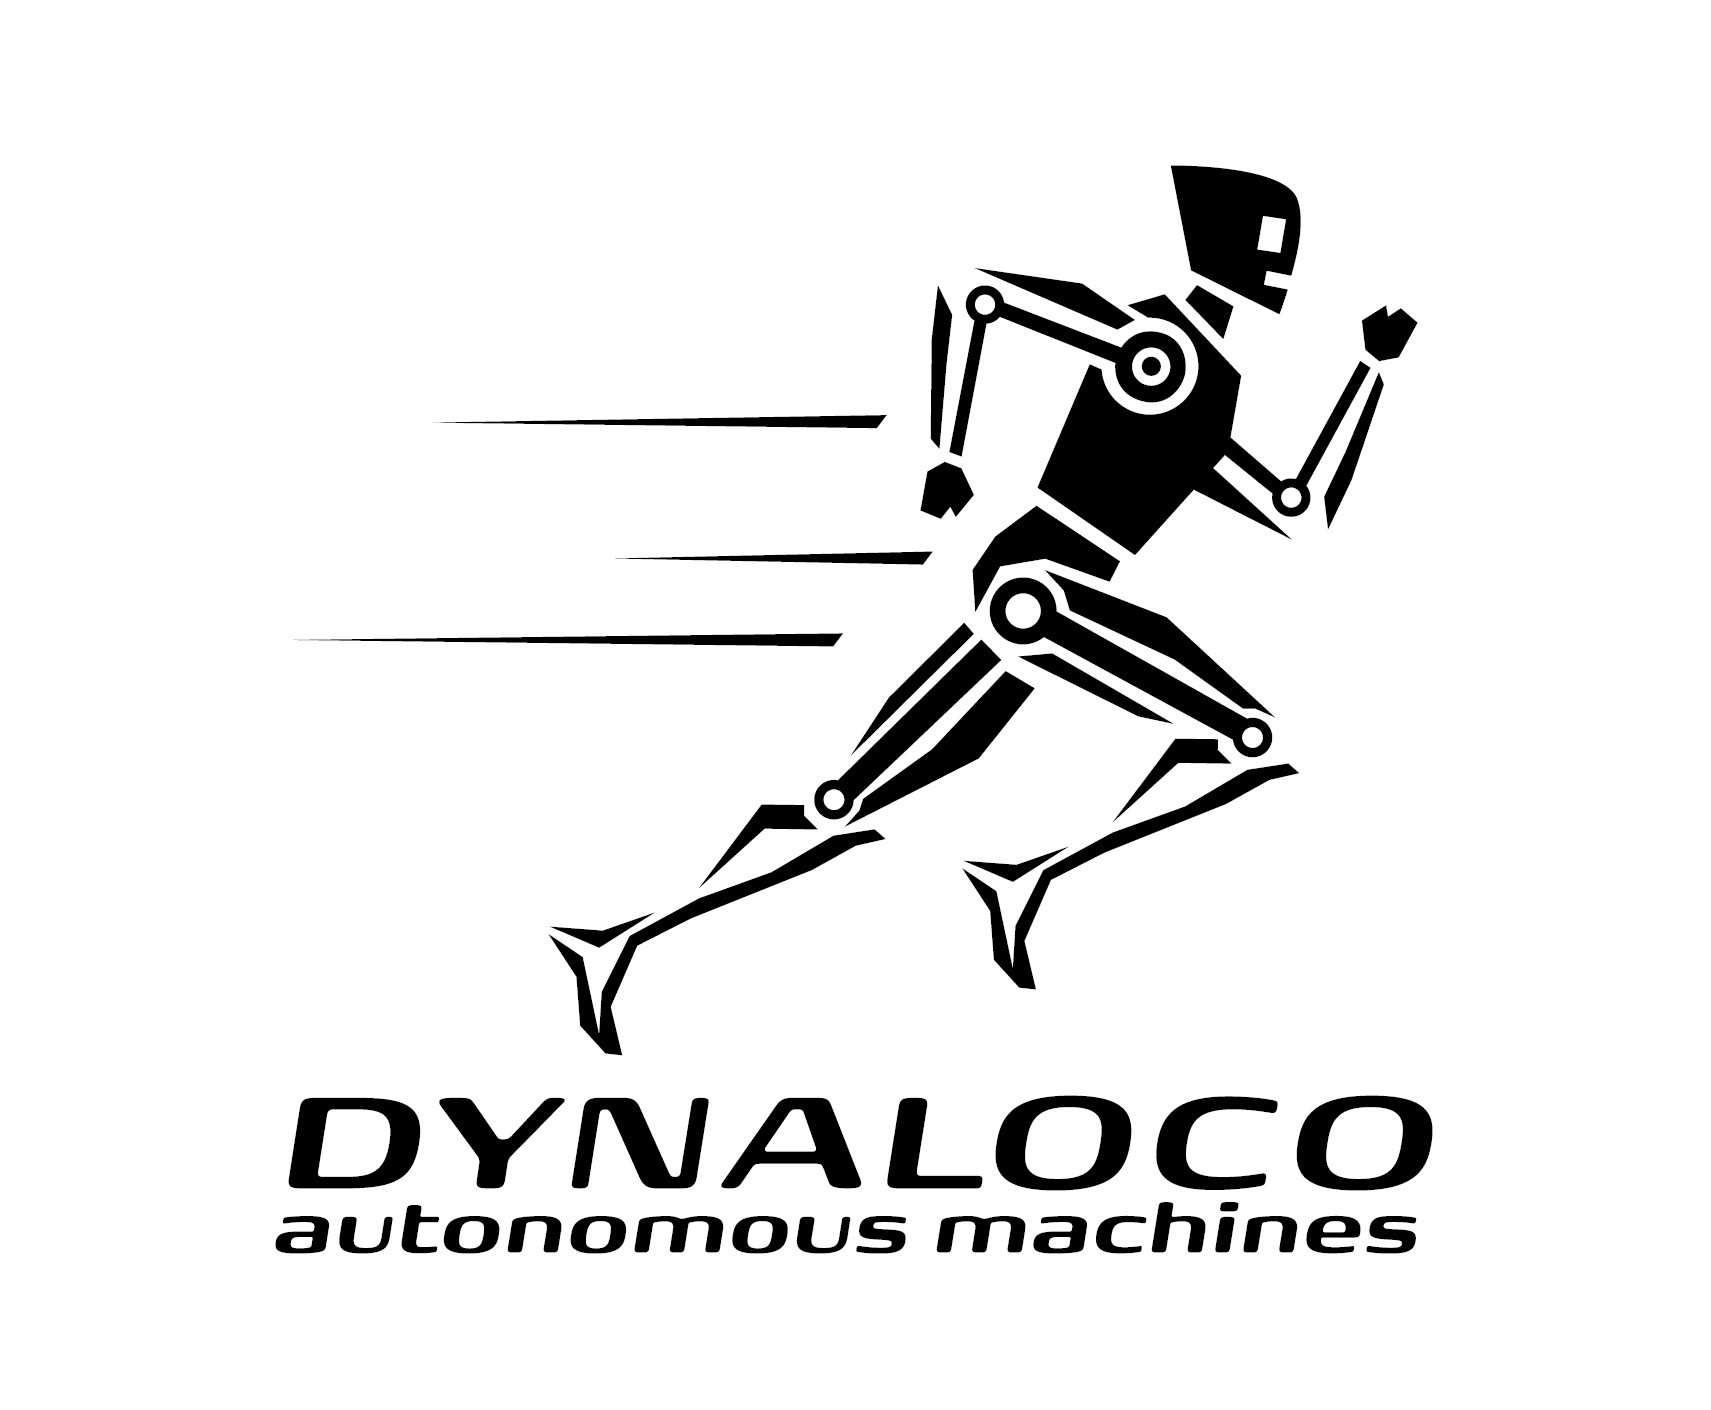 Dynaloco